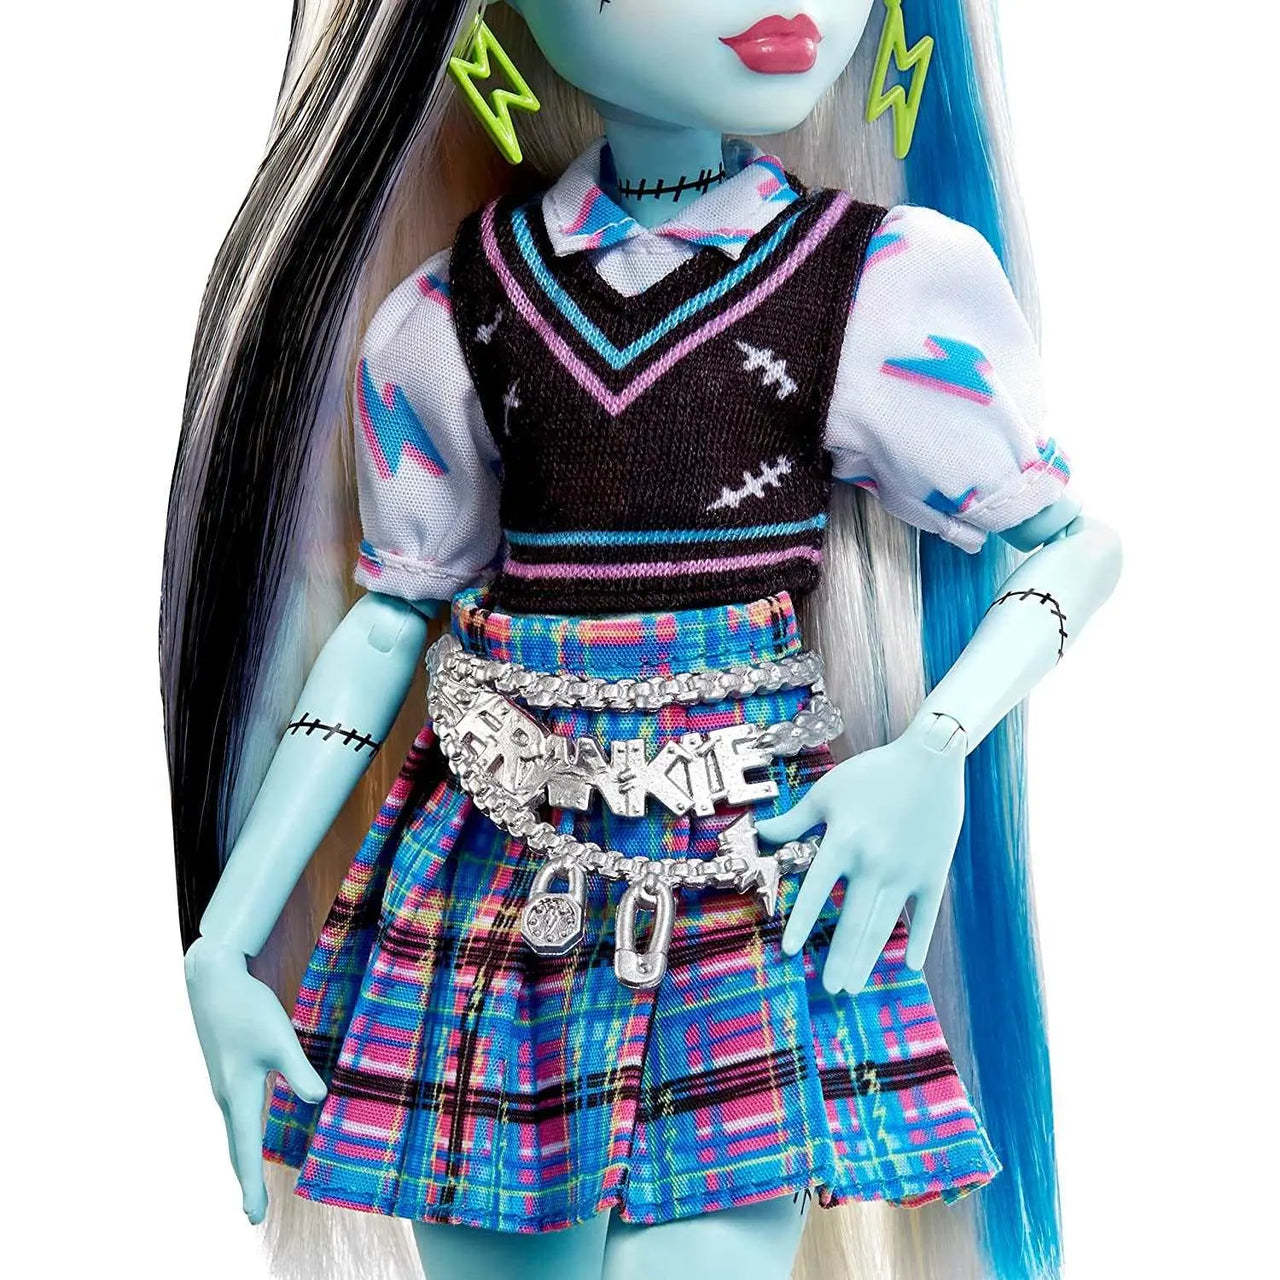 Monster High Frankie Stein Doll Monster High